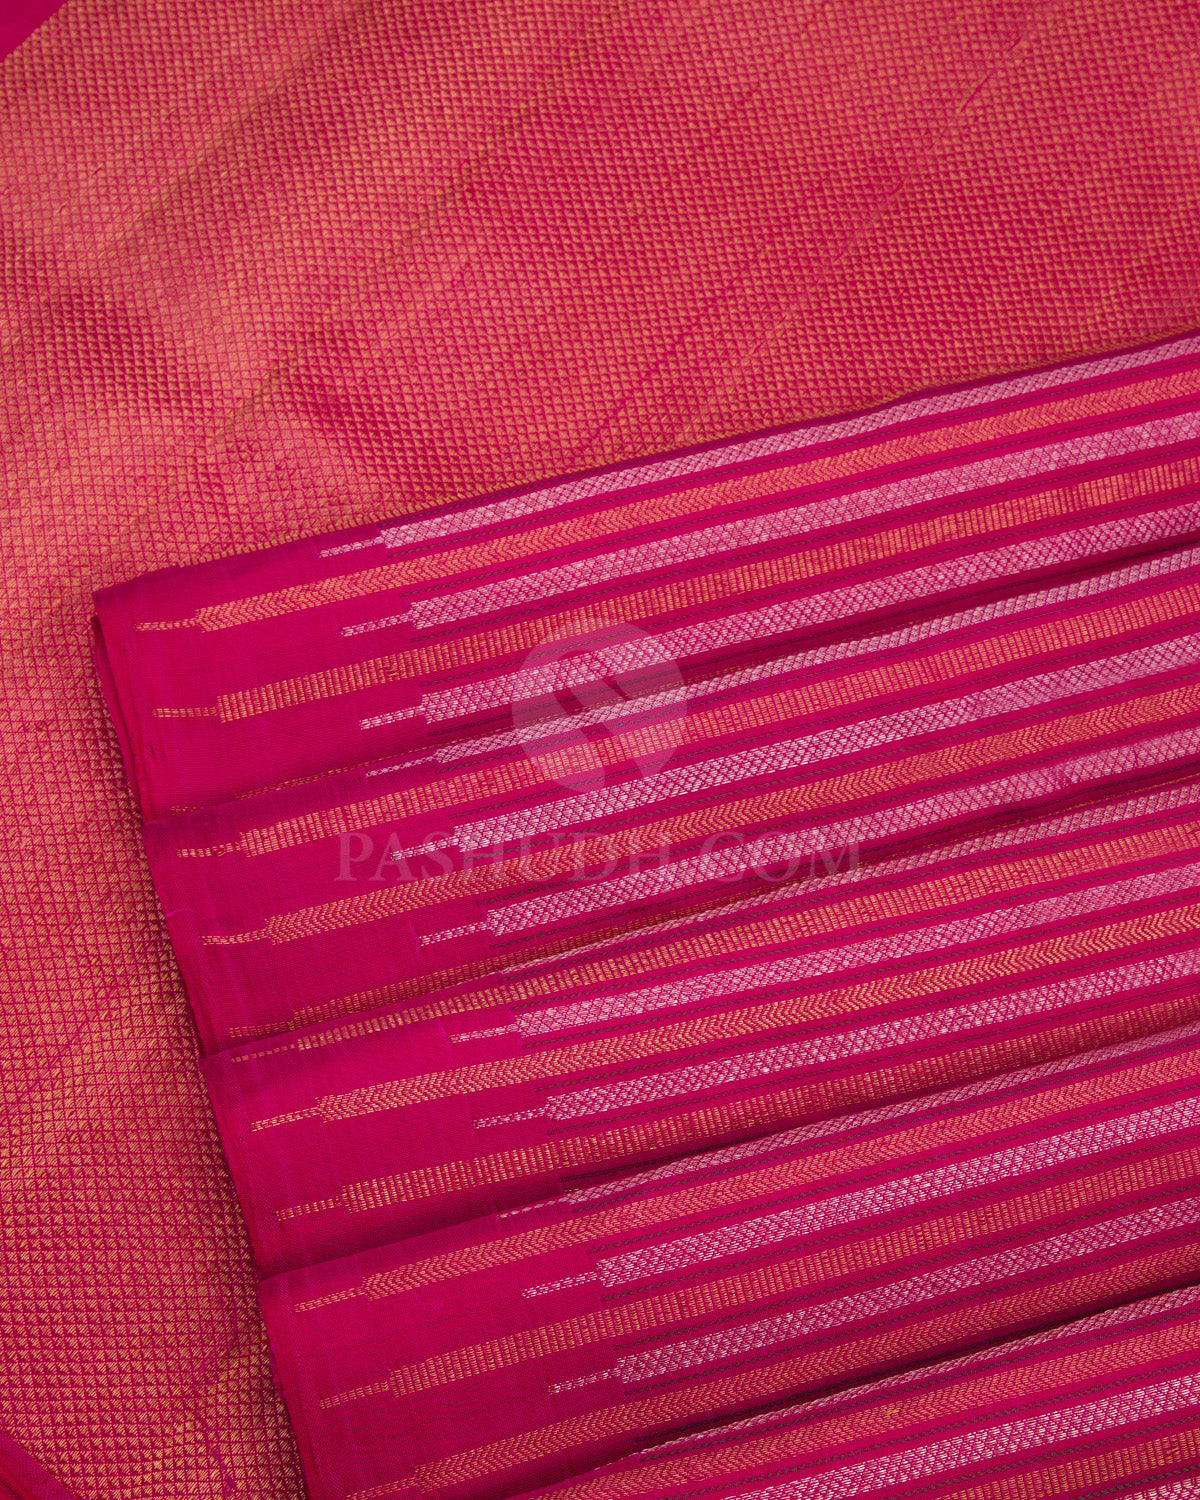 Bright Pink Kanjivaram Silk Saree - S674 - View 5